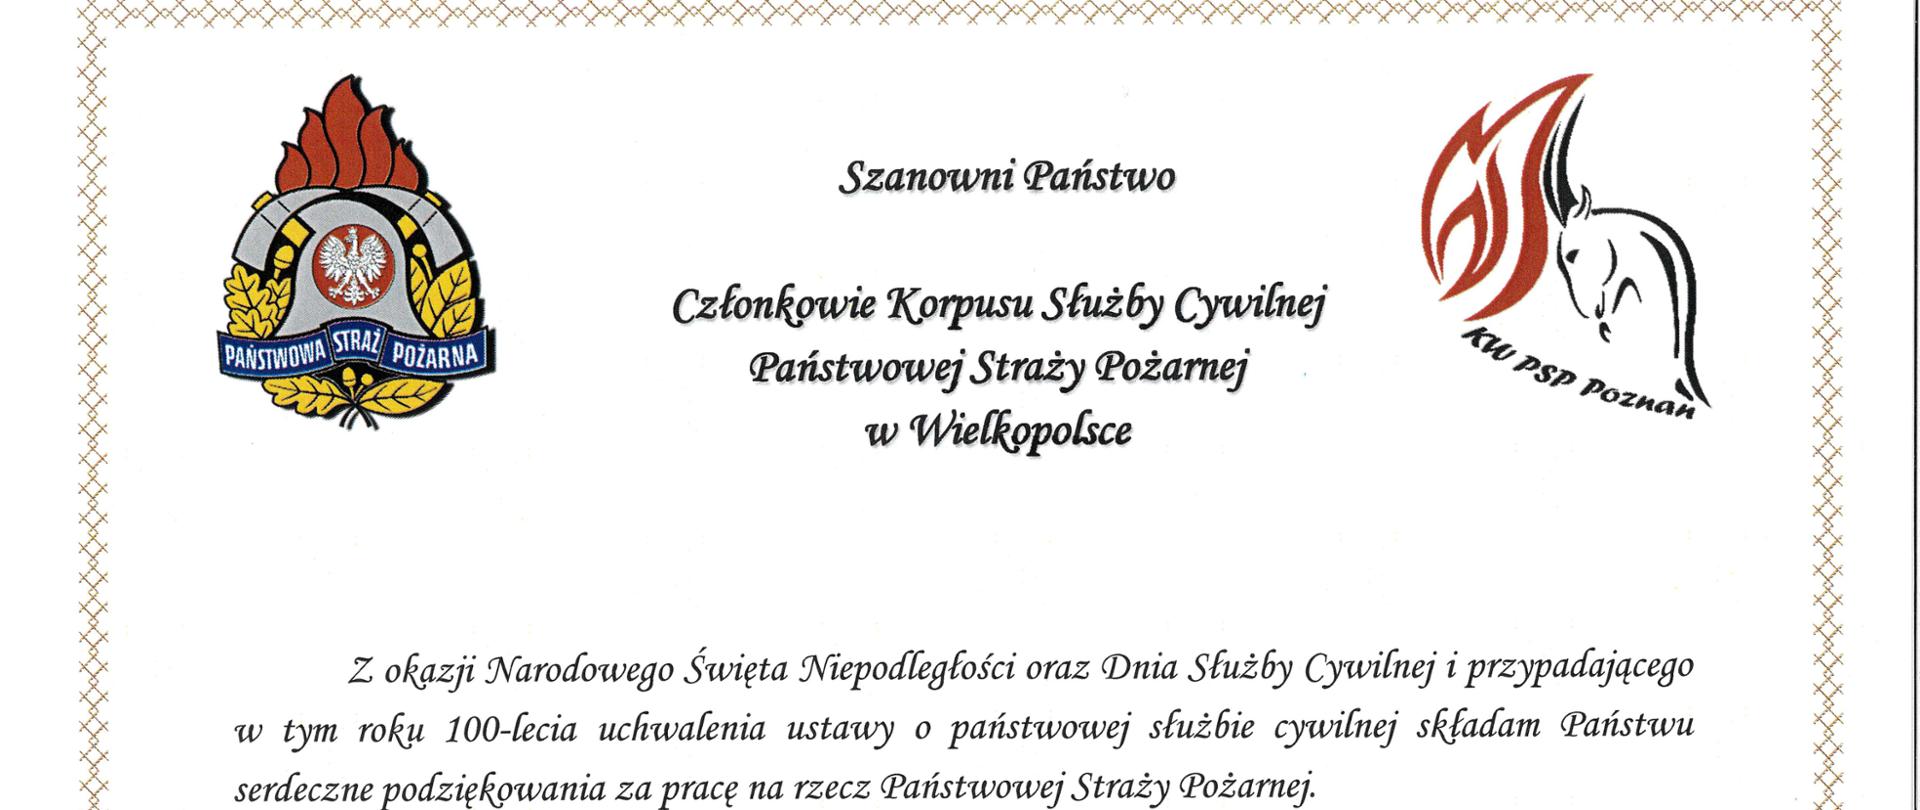 Zdjęcie przedstawia Życzenia Wielkopolskiego Komendanta Wojewódzkiego PSP z okazji Dnia Służby Cywilnej.
Tło białe.
